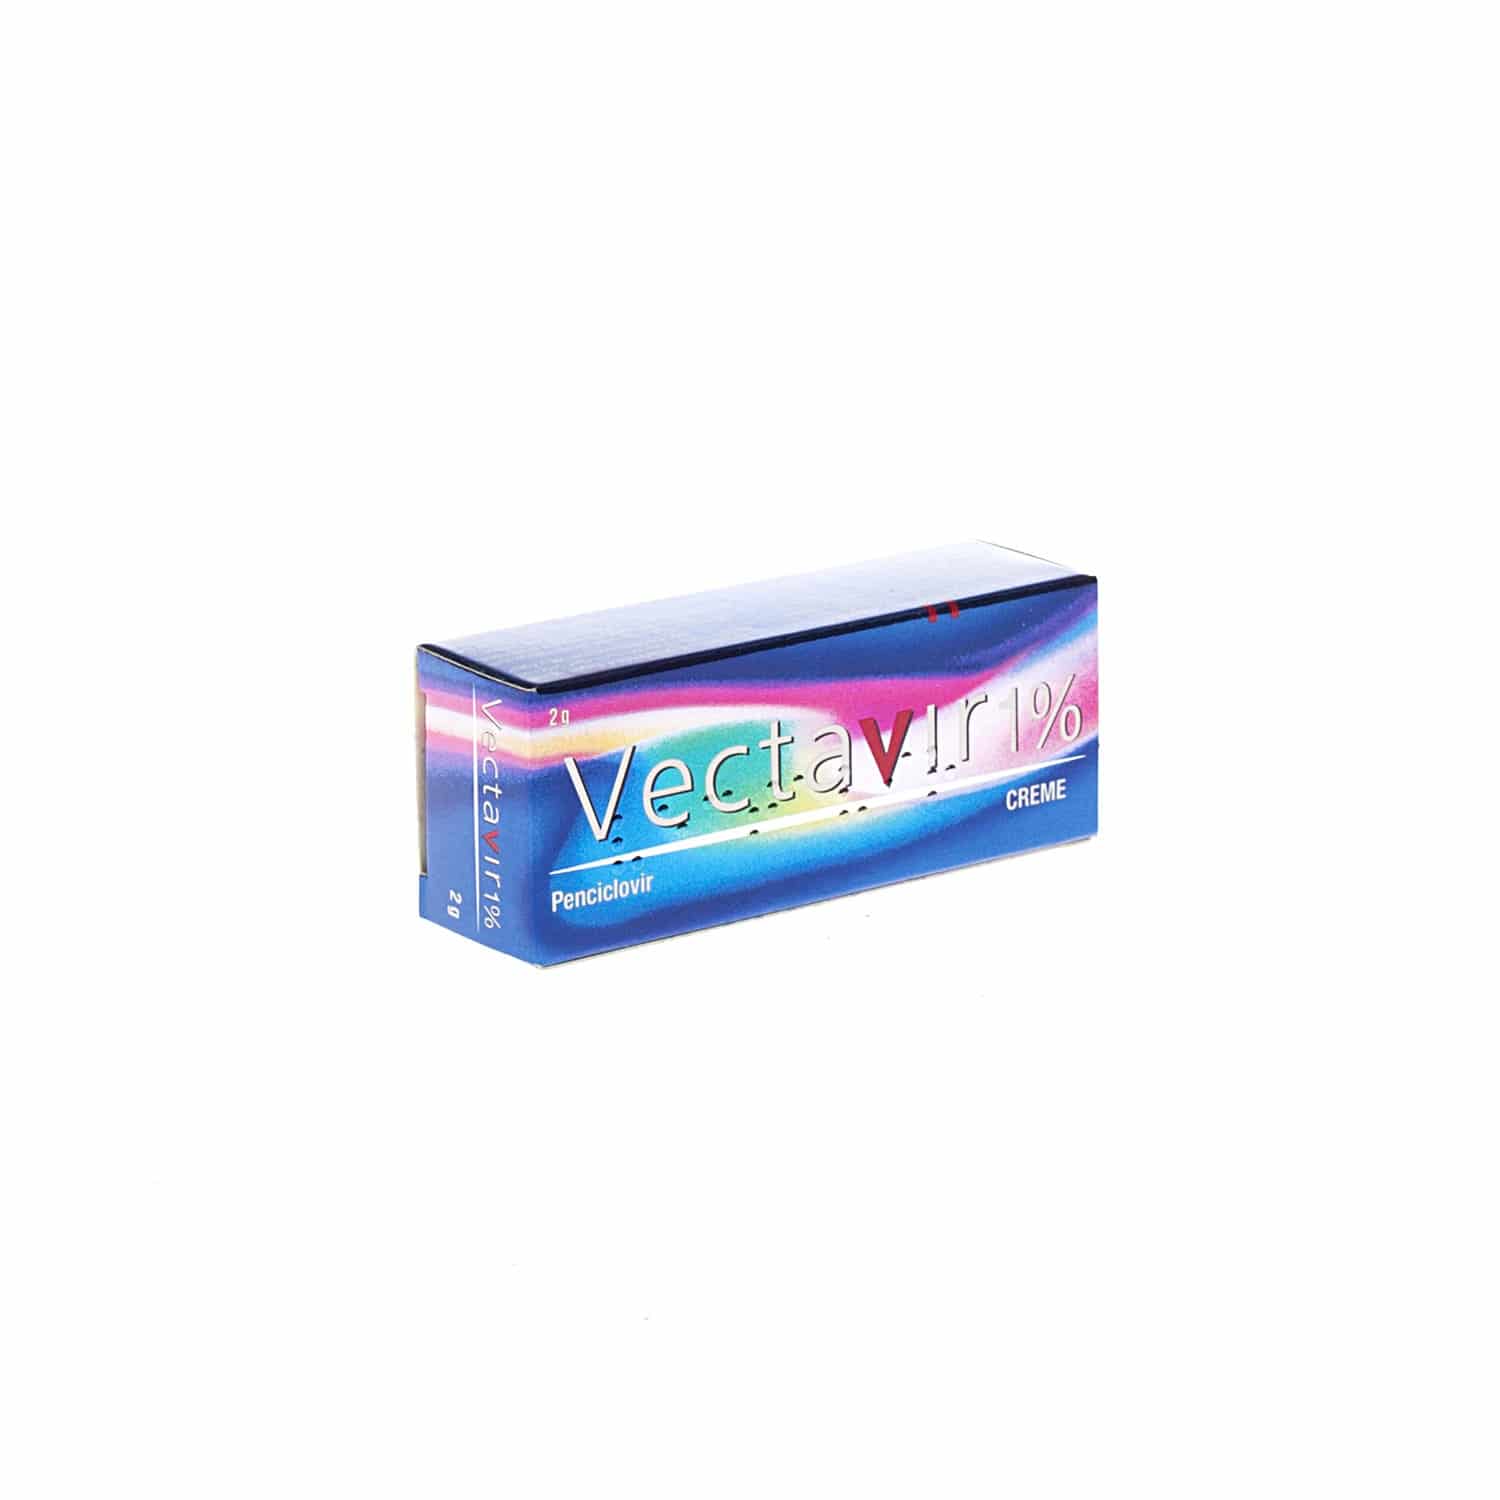 Vectavir Crème